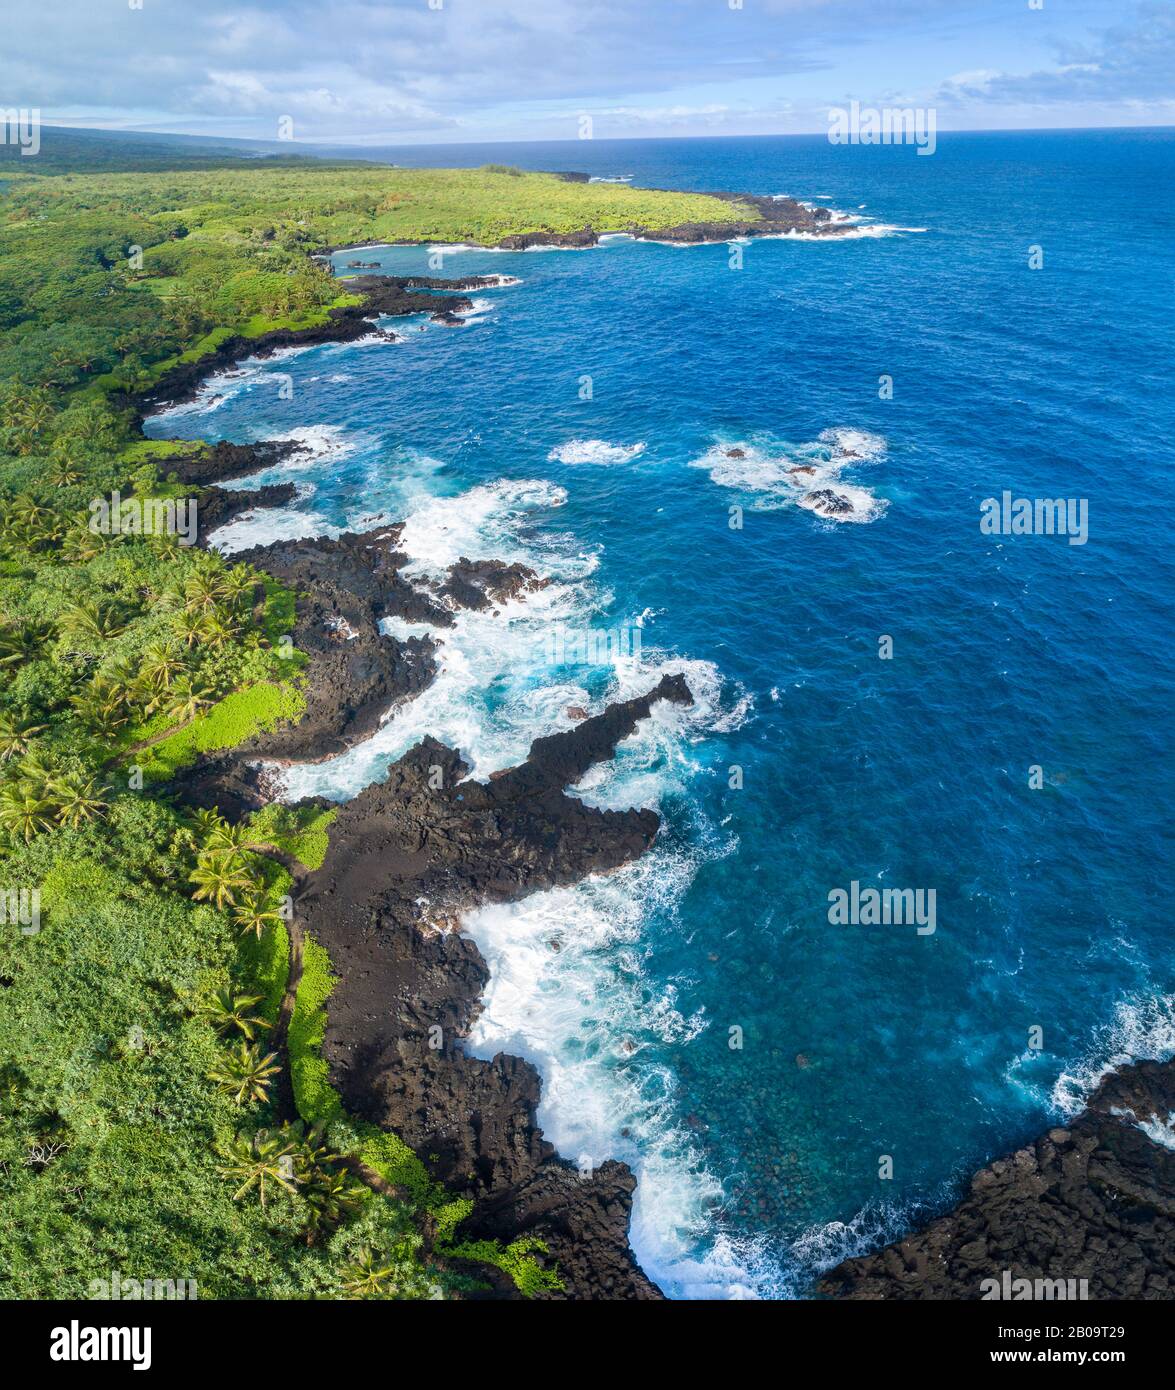 Una veduta aerea della costa al Waianapanapa state Park, Hana, Maui, Hawaii. La famosa spiaggia di sabbia nera si trova nella baia in cima alla cornice. Fiv Foto Stock